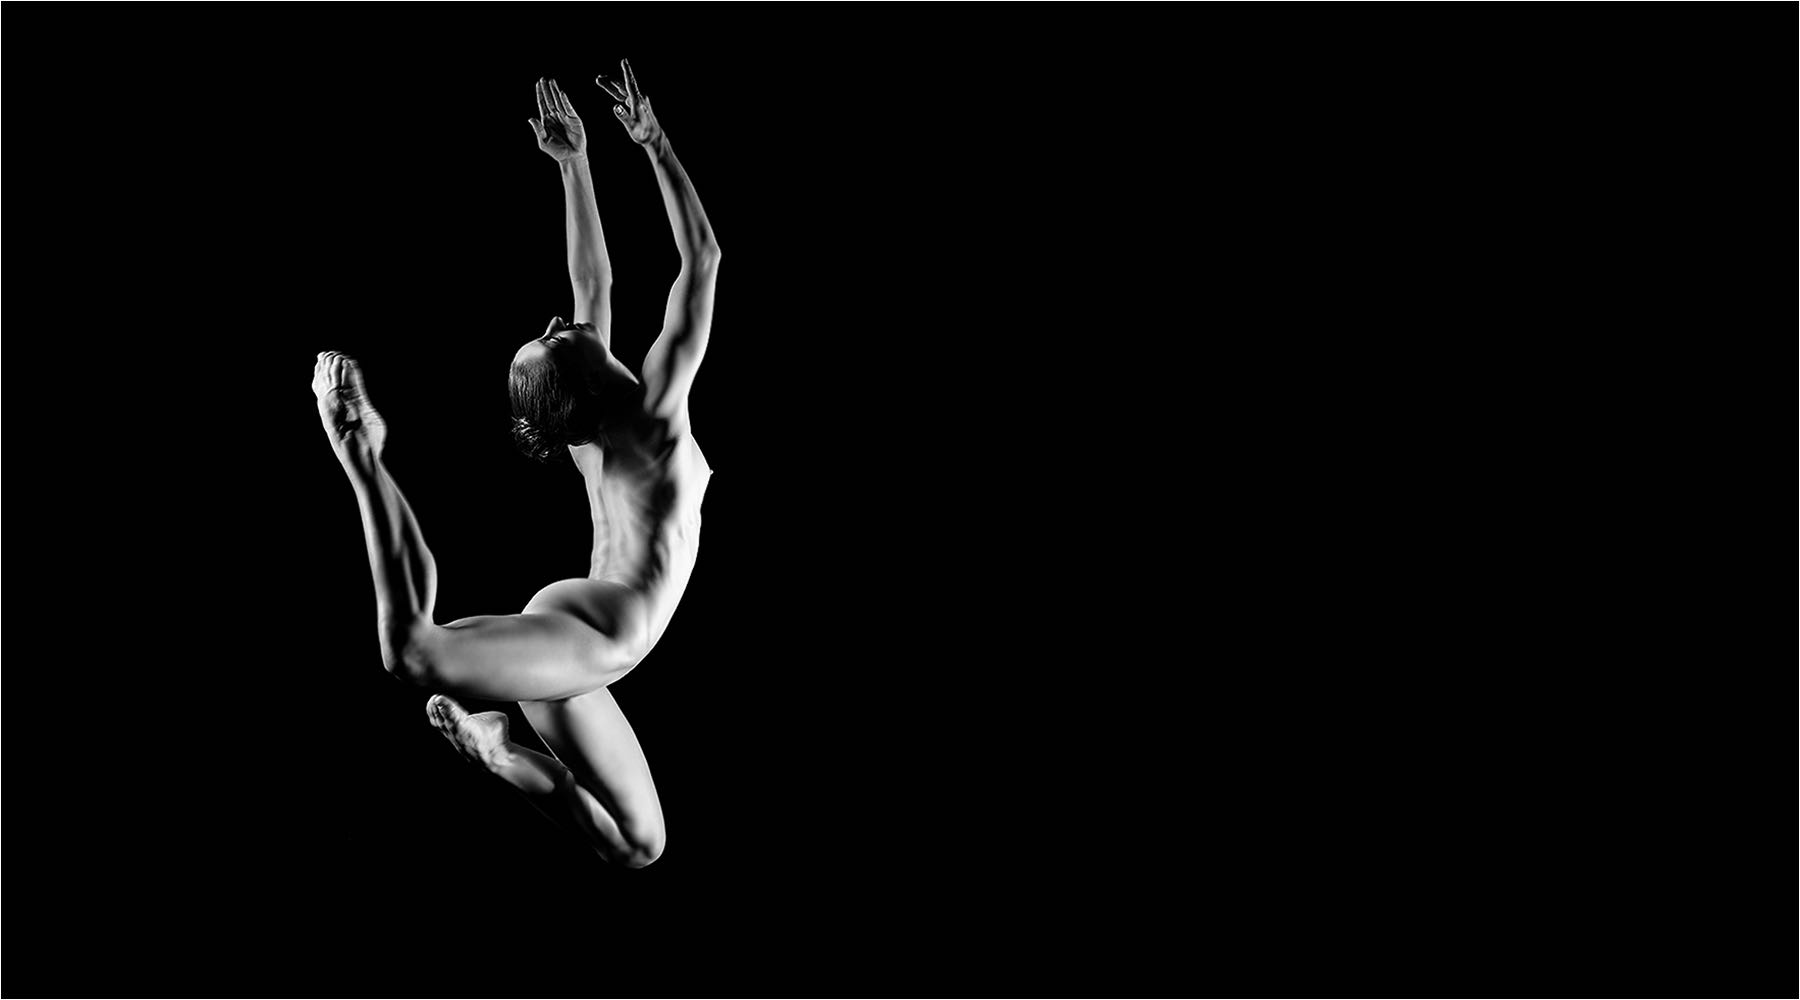  Tanzfotografie. Springende Tänzerin als Aktaufnahme im Studio vor schwarzem Hintergrund. Aufgenommen mit Mittelformattechnik und Studioblitzanlage. Copyright by Fotostudio Jörg Riethausen 